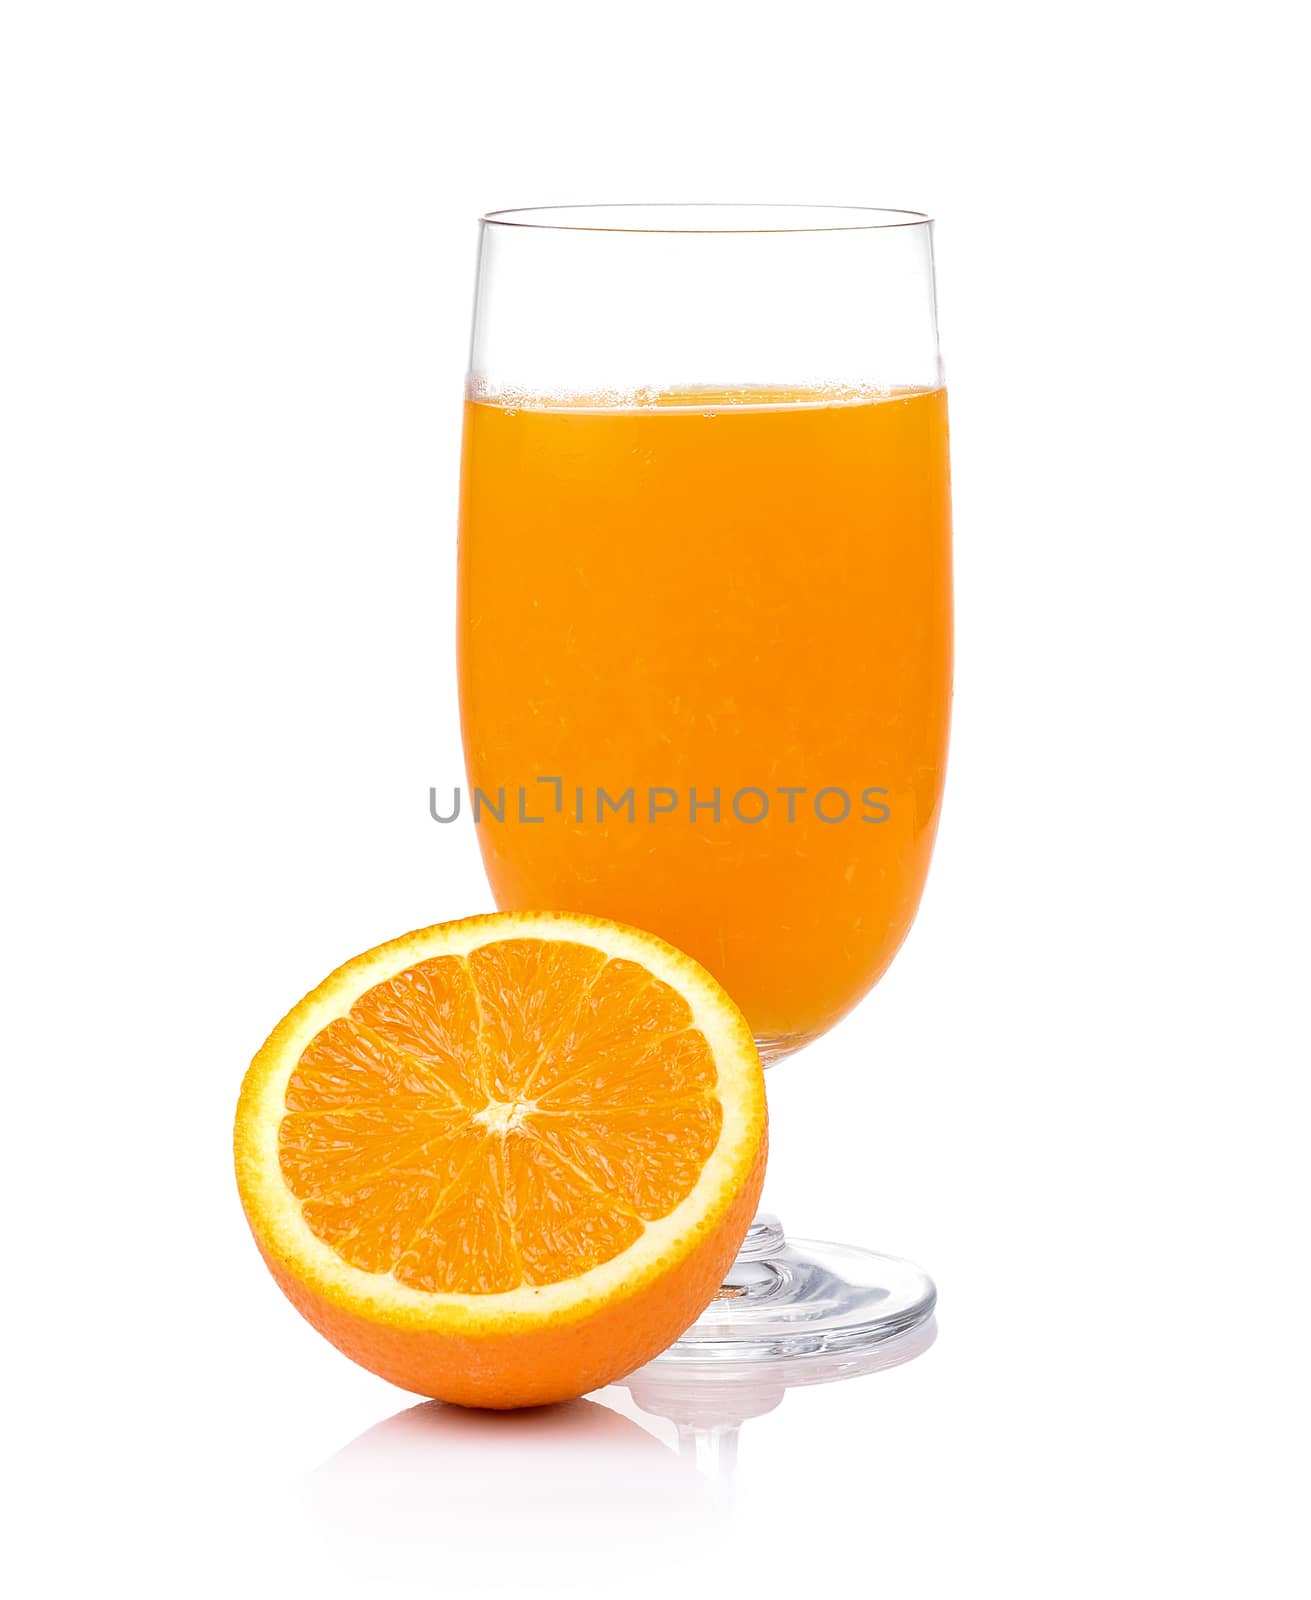 Orange juice and orange isolated on white background by sommai